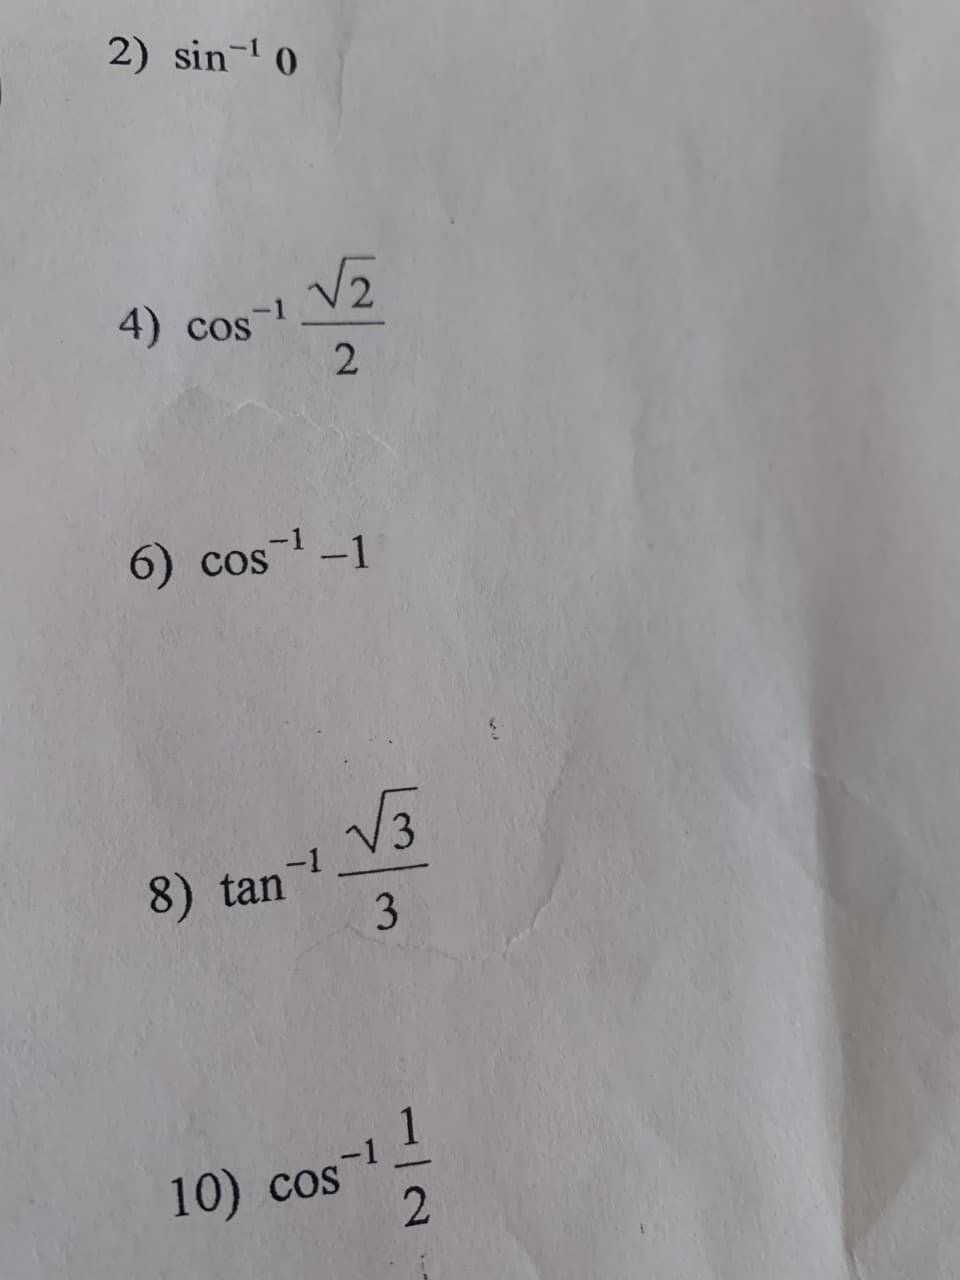 2) sin- 0
4) cos
6) cos
-1
V3
8) tan-
1
10) cos
-1
